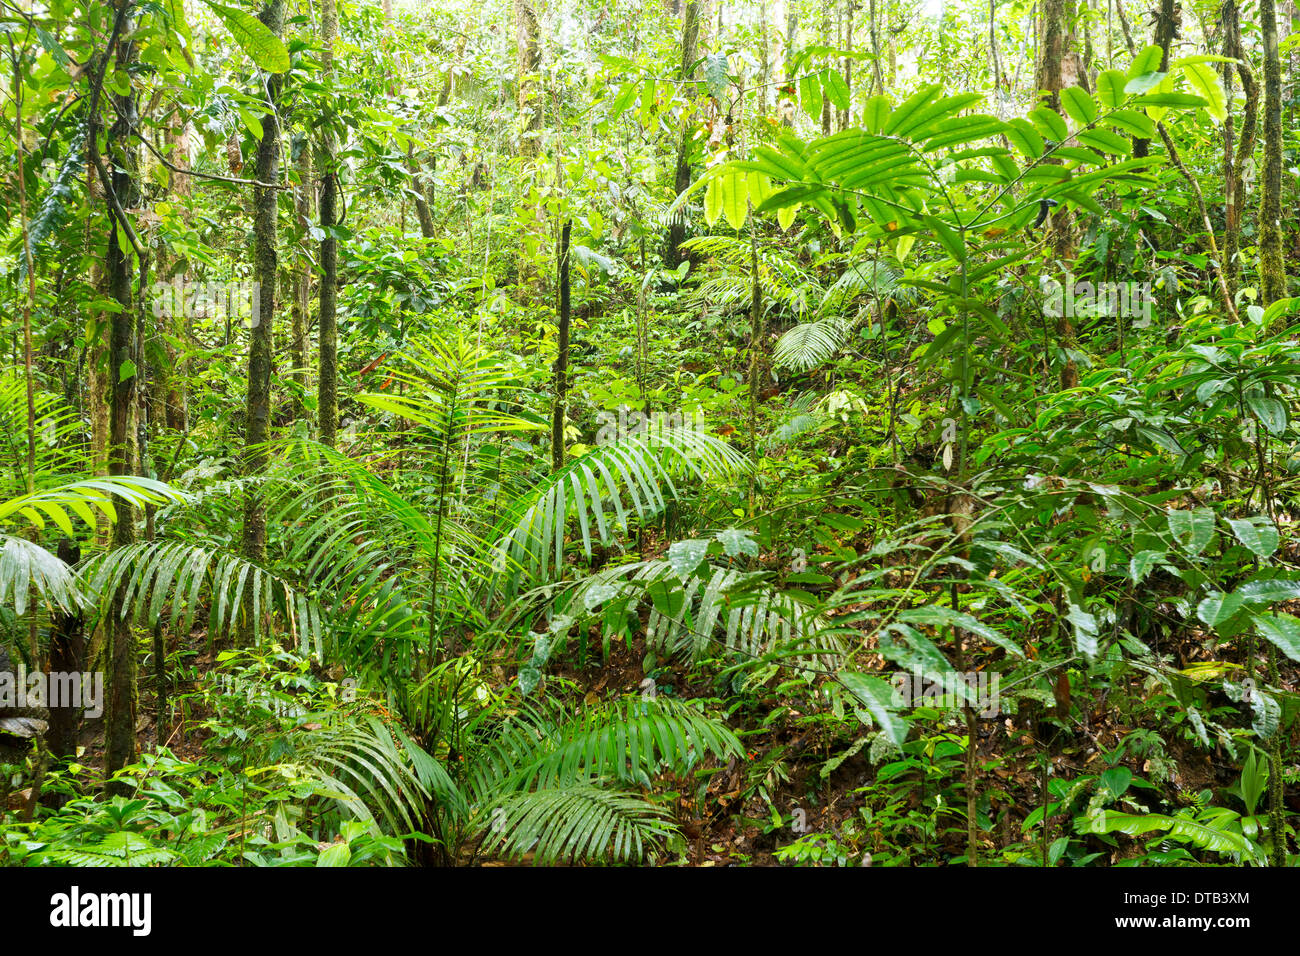 Das grüne Landesinnere des tropischen Regenwaldes im oberen Amazonasbecken, Ecuador Stockfoto